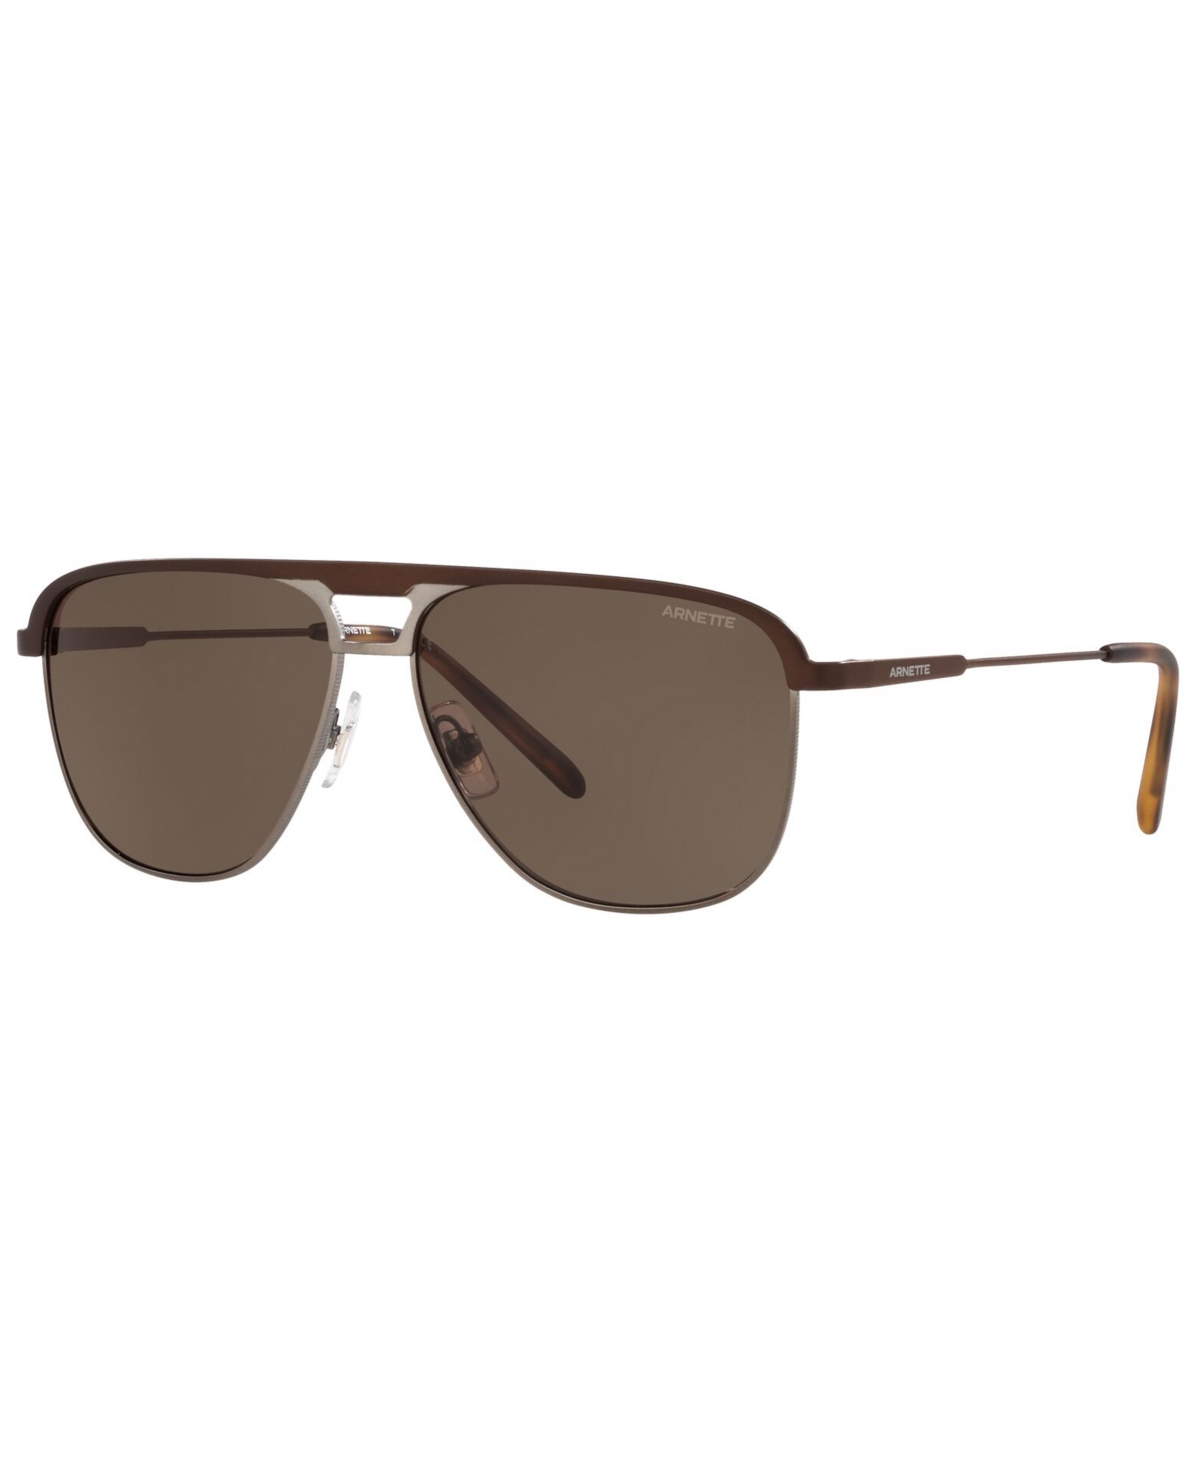 Men's Sunglasses, AN3082 57 - BROWN MATTE/BROWN